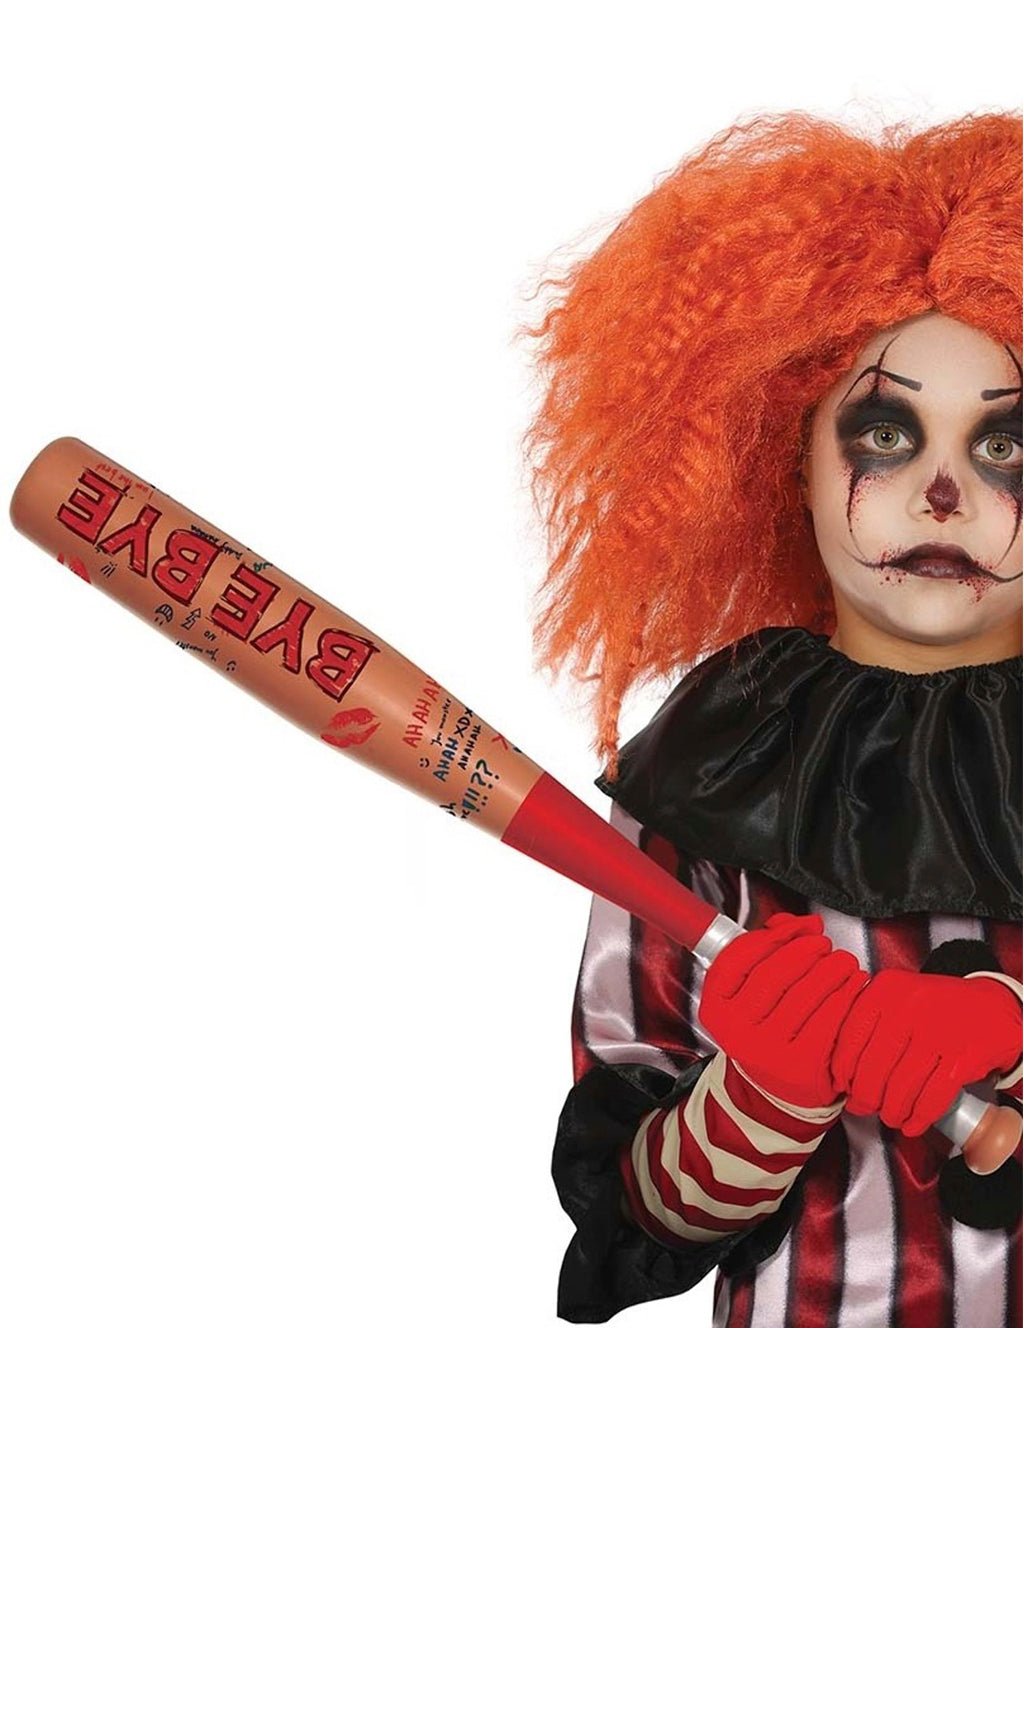 Mazza da baseball clown per bambini